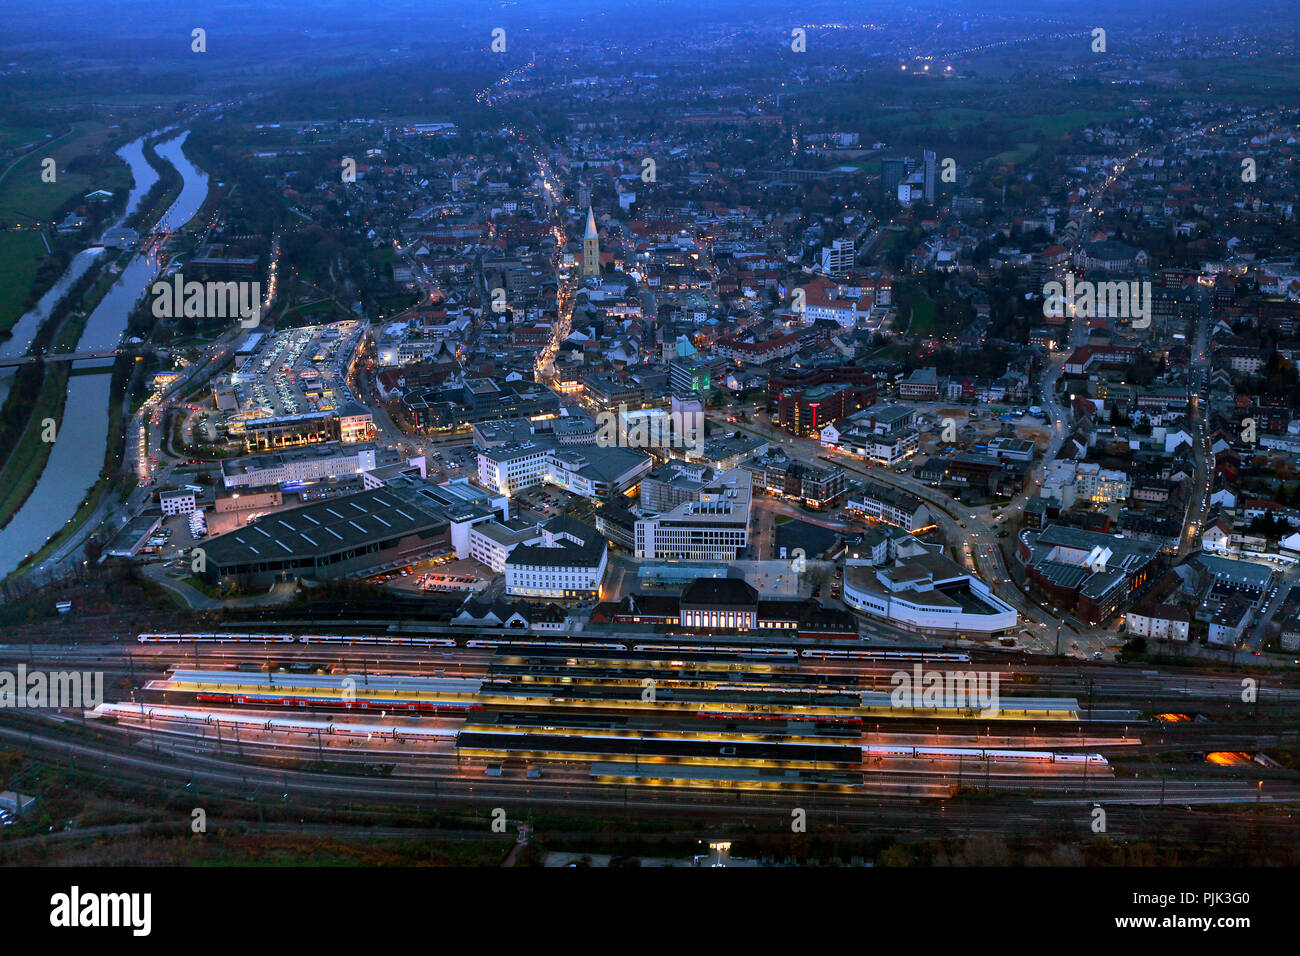 Vista aerea, Alleecenter ECE di notte, stazione centrale Hamm, night shot, Hamm, night shot, la zona della Ruhr, Renania settentrionale-Vestfalia, Germania, Europa Foto Stock